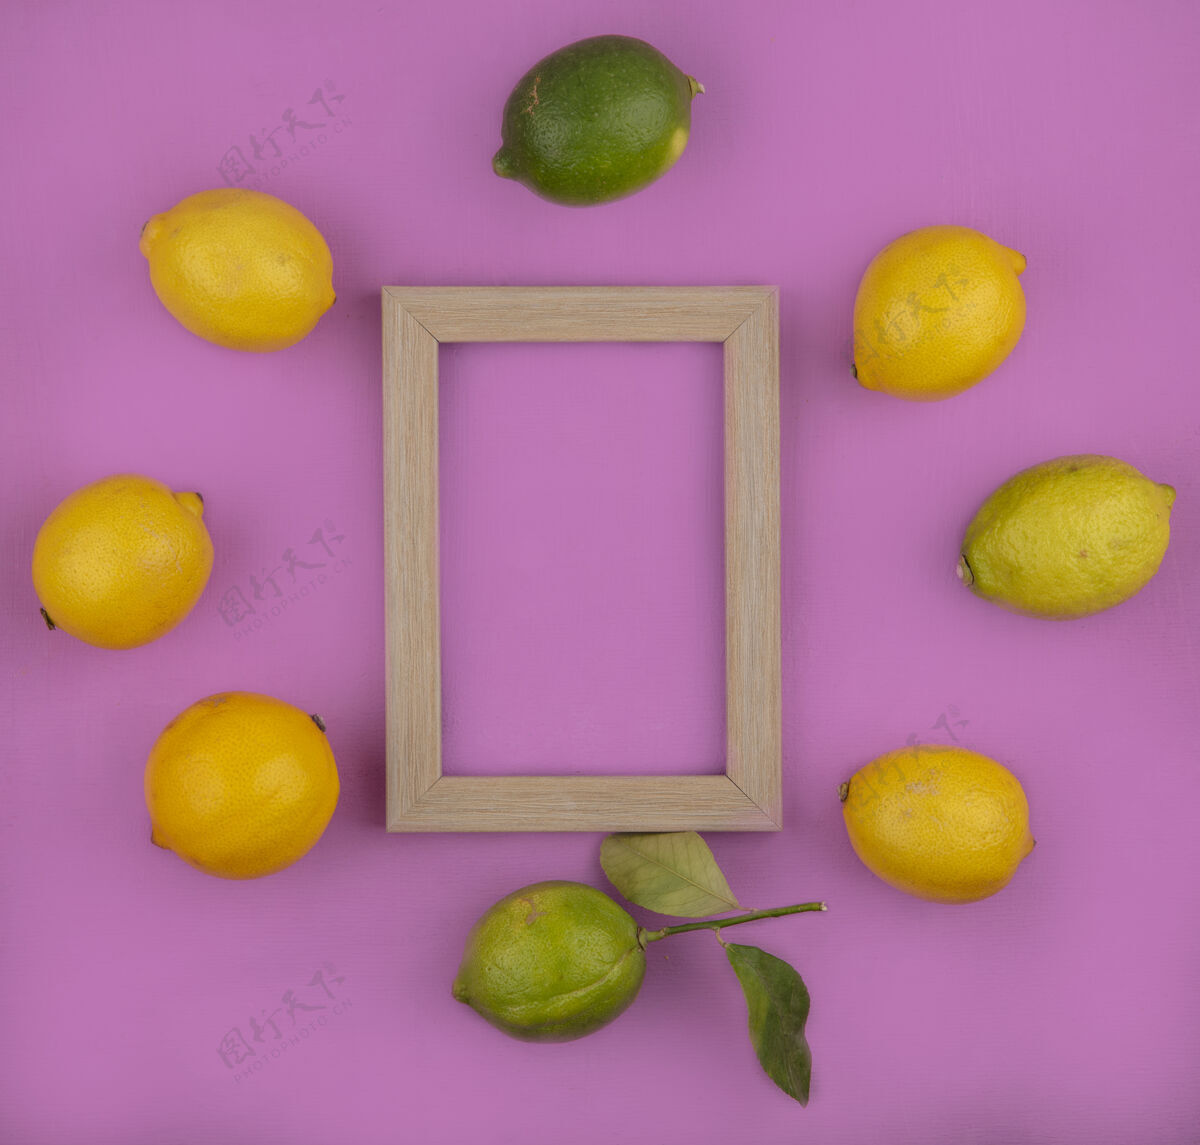 水果顶视图复制空间柠檬与酸橙和粉红色背景上的框架新鲜柑橘柠檬